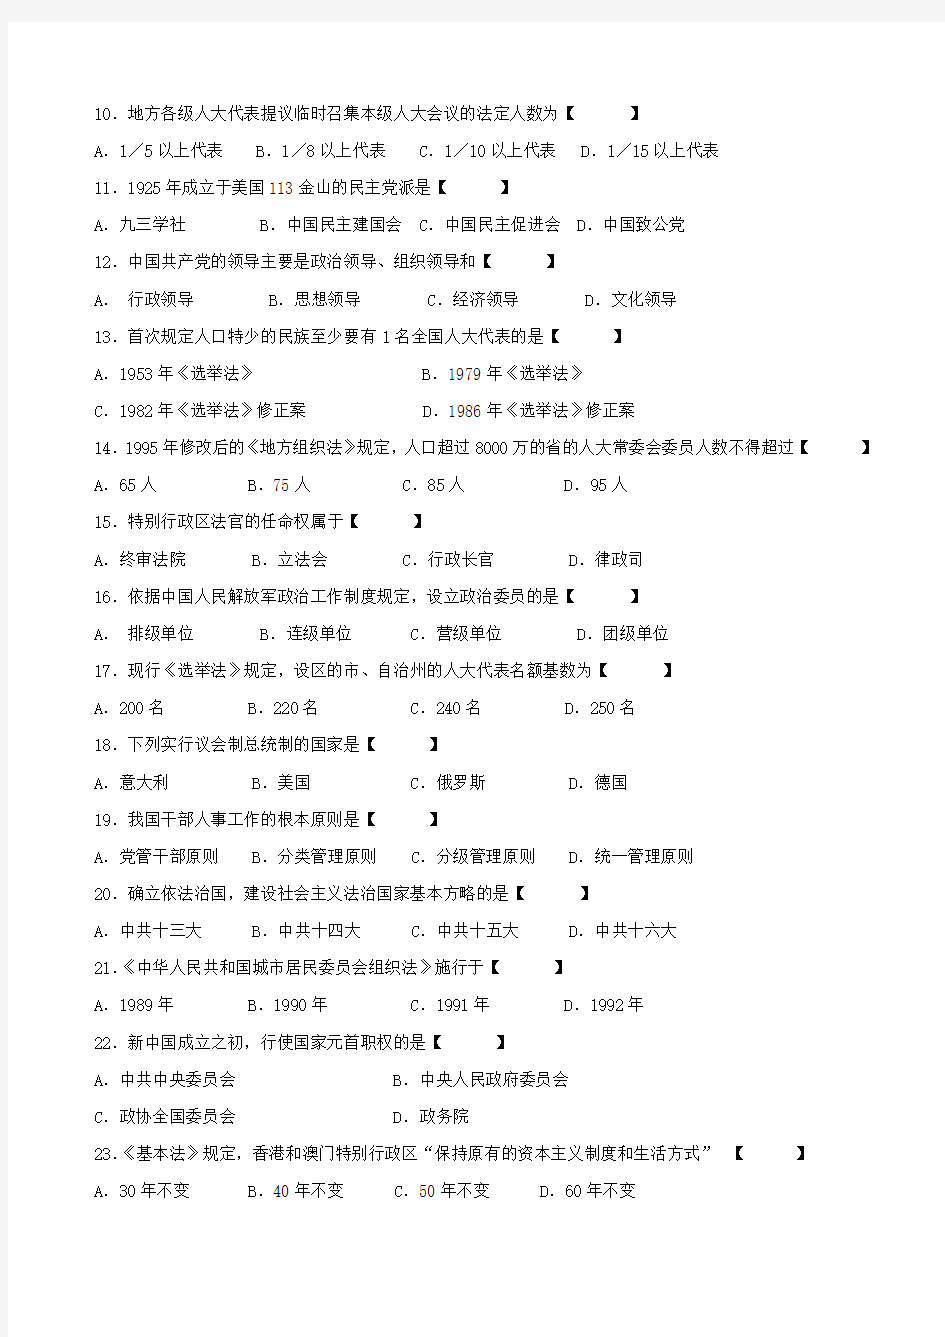 真题版2015年10月自学考试00315《当代中国政治制度》历年真题